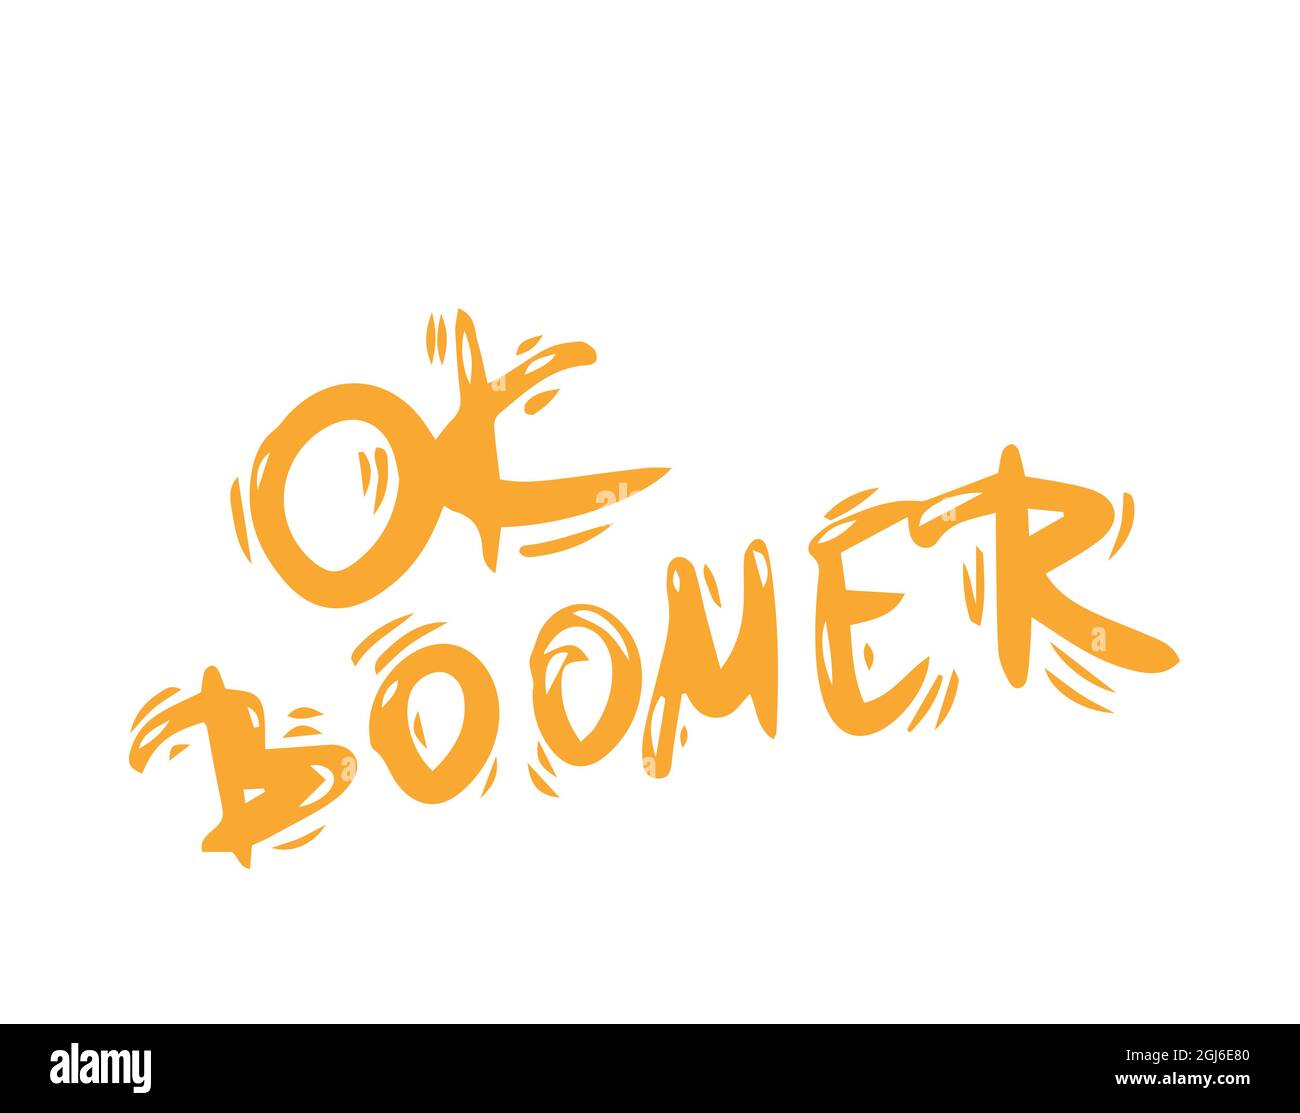 OK Boomer-Text. Handgezeichnete sarkastische Botschaft. Zitat der Generation z. Meme-Beschriftung. Stock Vektor